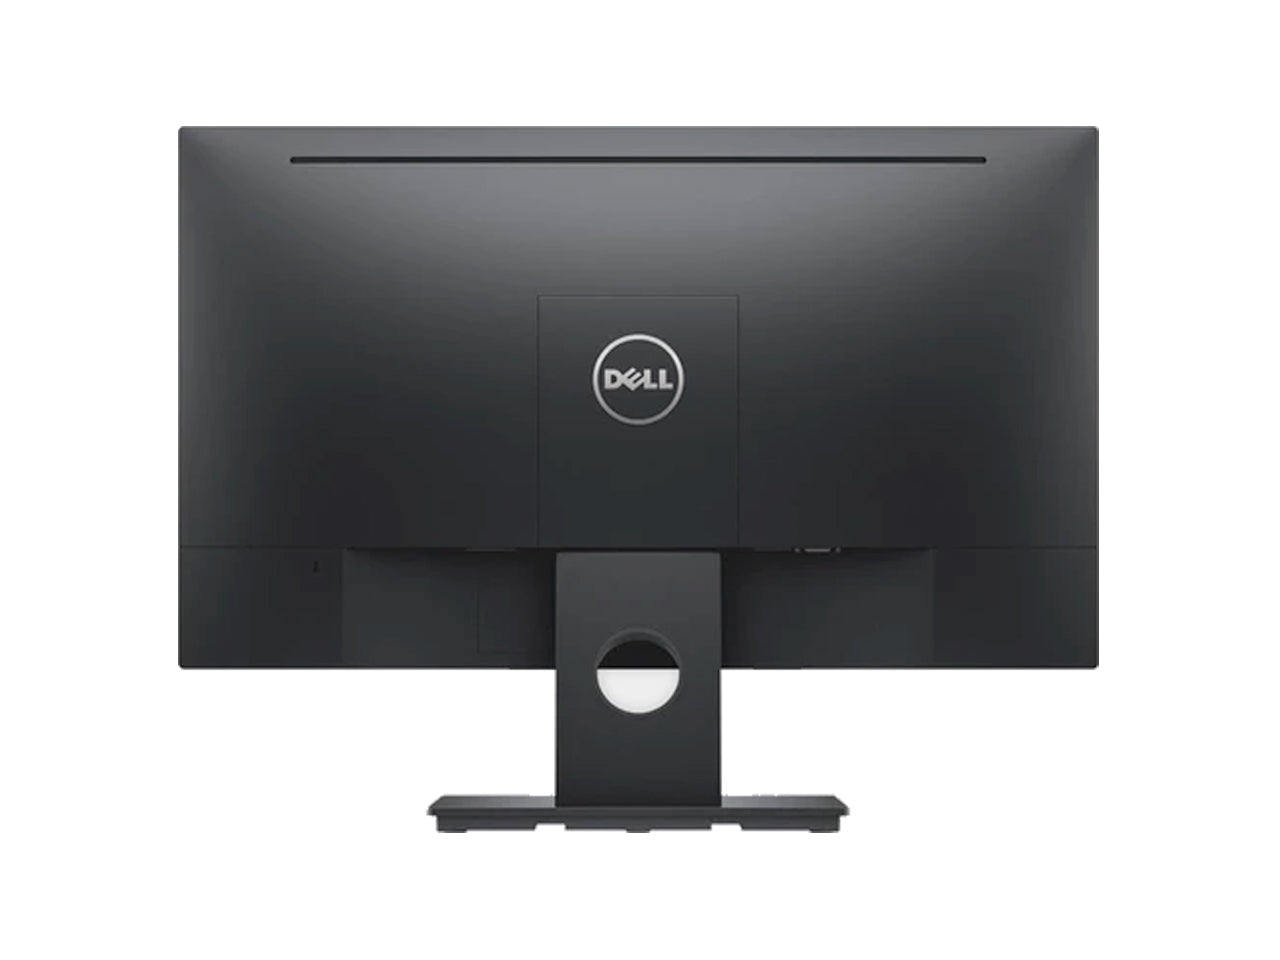 Dell E2418HN (Black) 23.8 inch (60.47 cm) LED Monitor